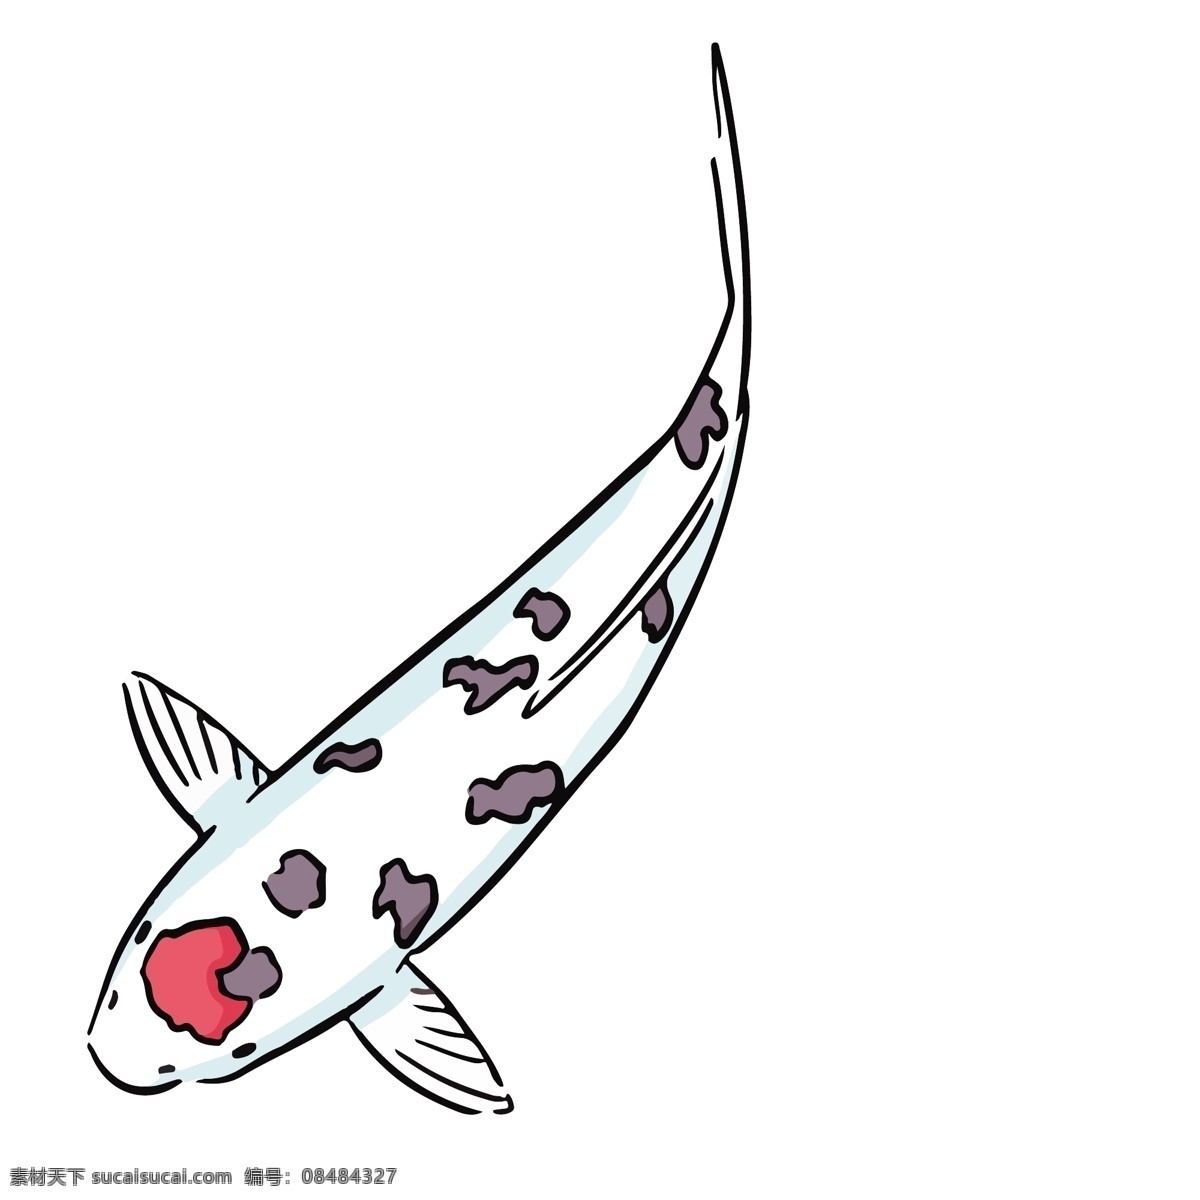 鲤鱼插画图案 风水鱼 中国风鲤鱼 鲤鱼绘画 鲤鱼插画 鲤鱼图案 中式鲤鱼 鱼类 风水装饰